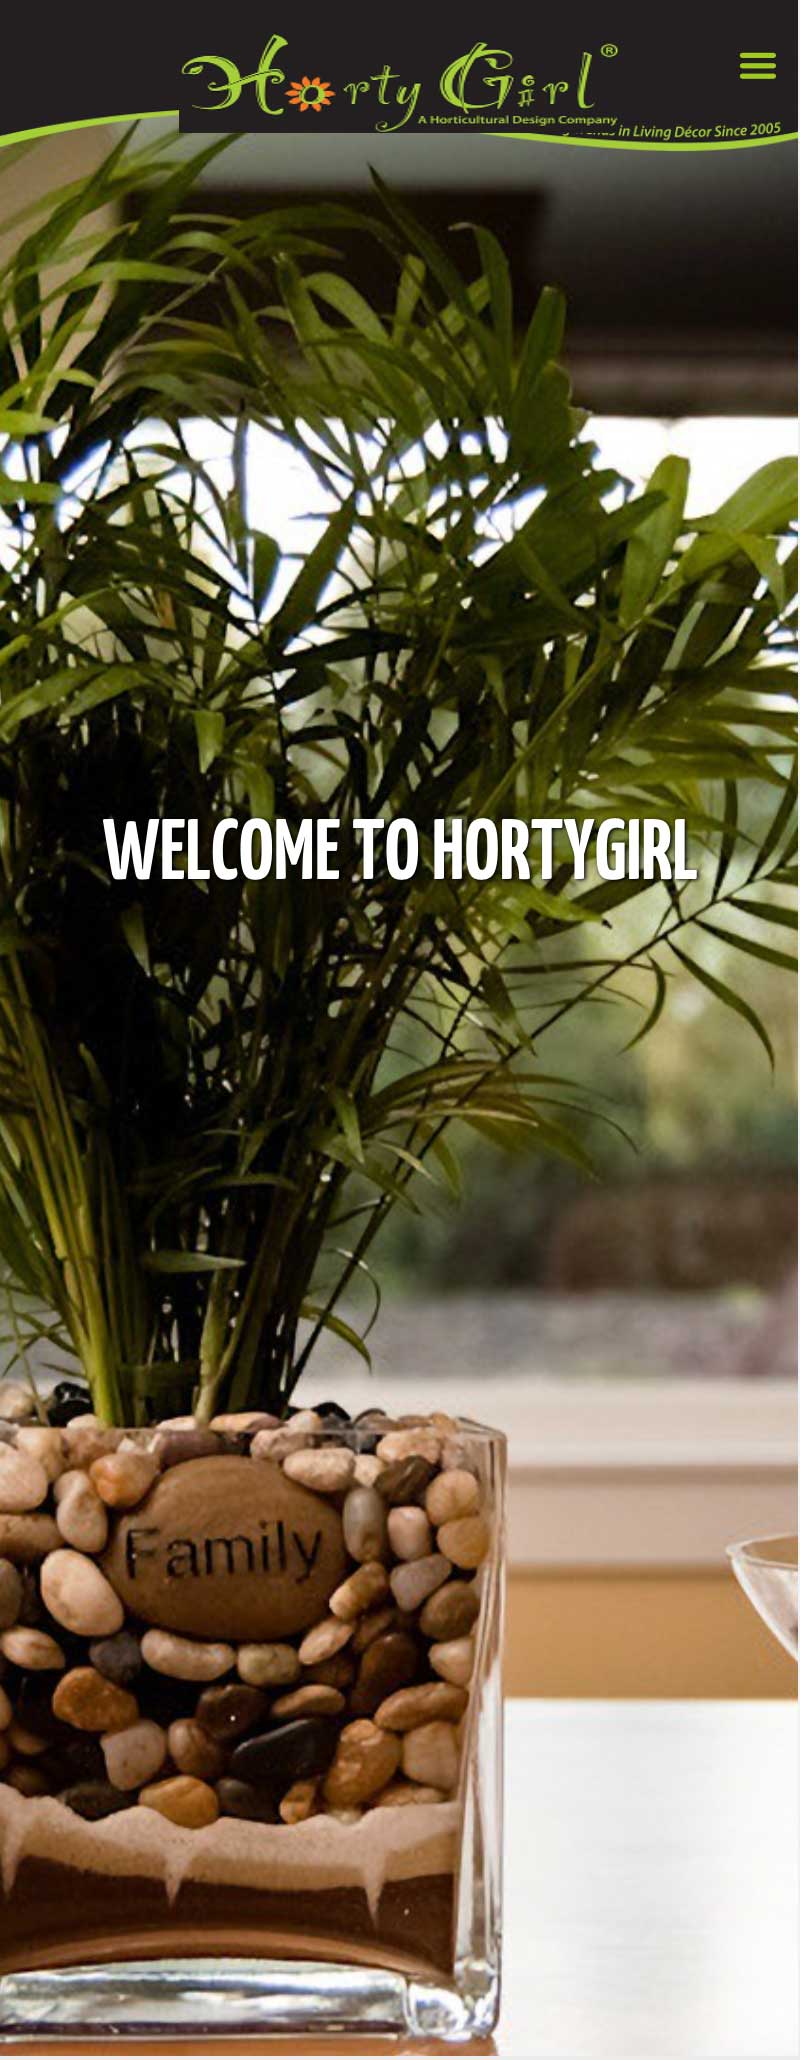 HortyGirl